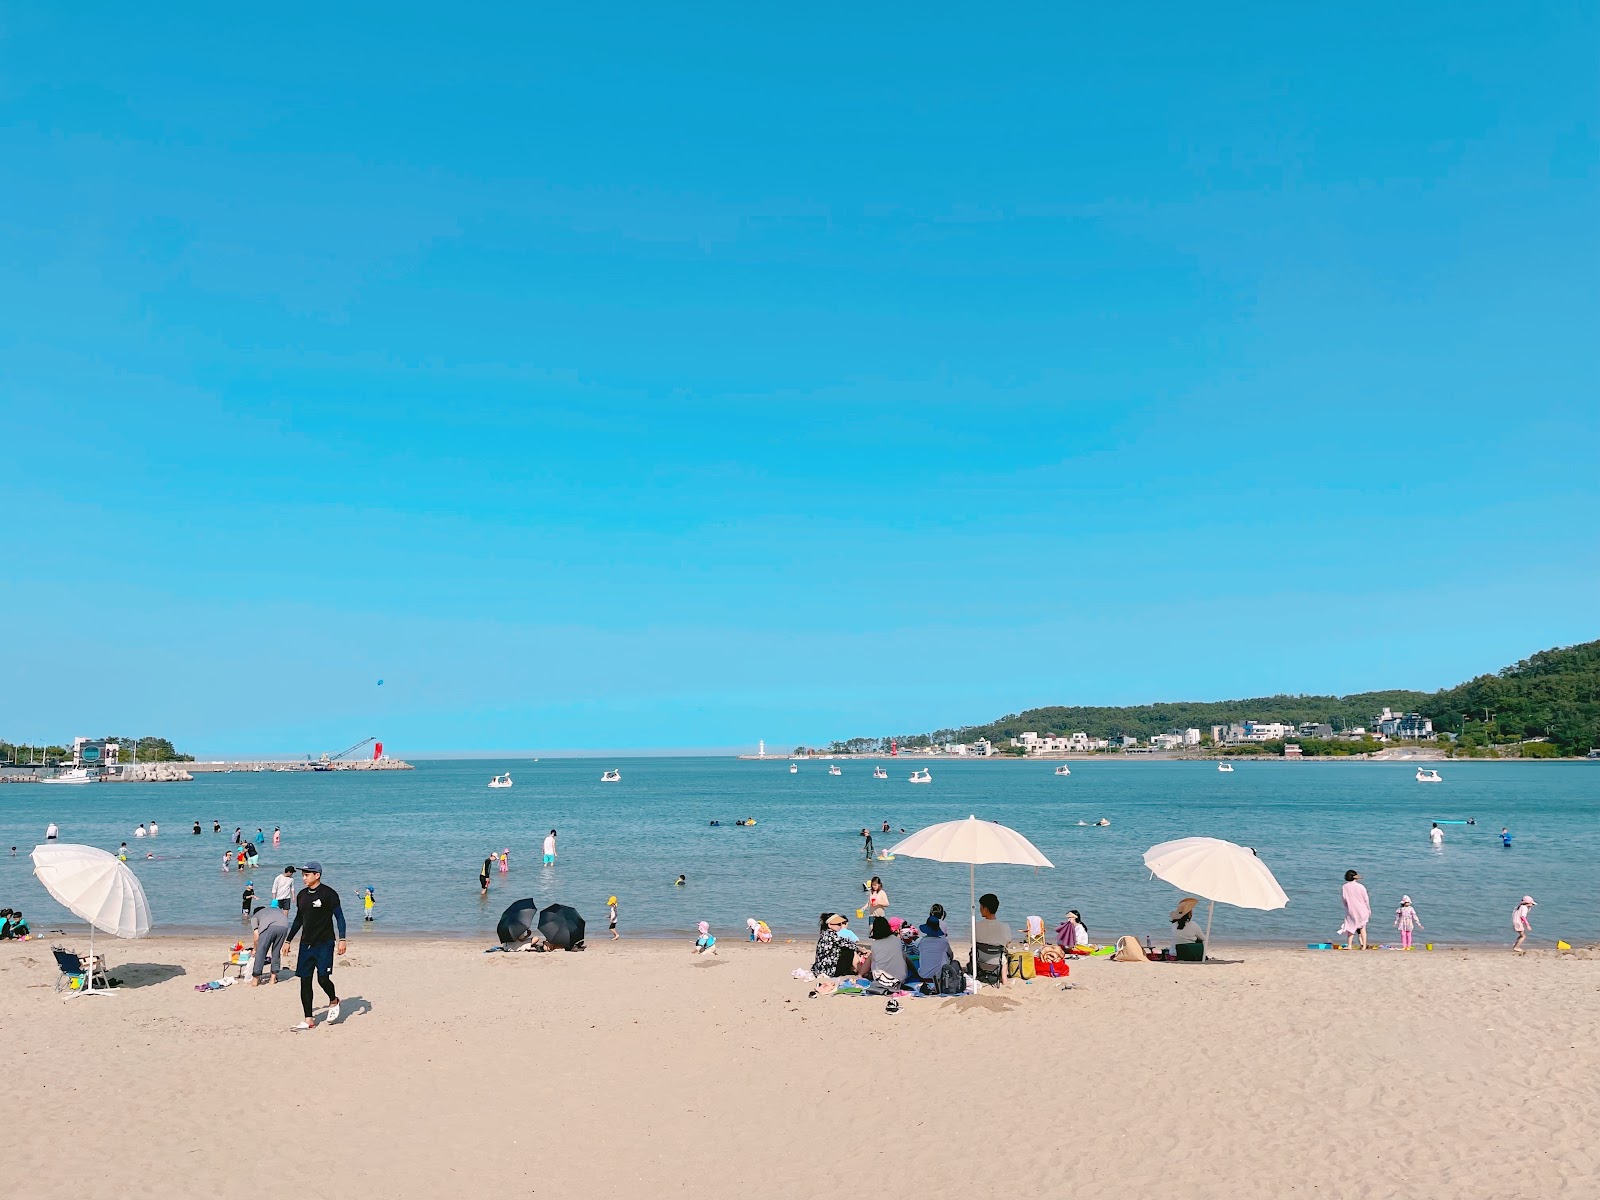 Ilgwang海滩的照片 - 受到放松专家欢迎的热门地点